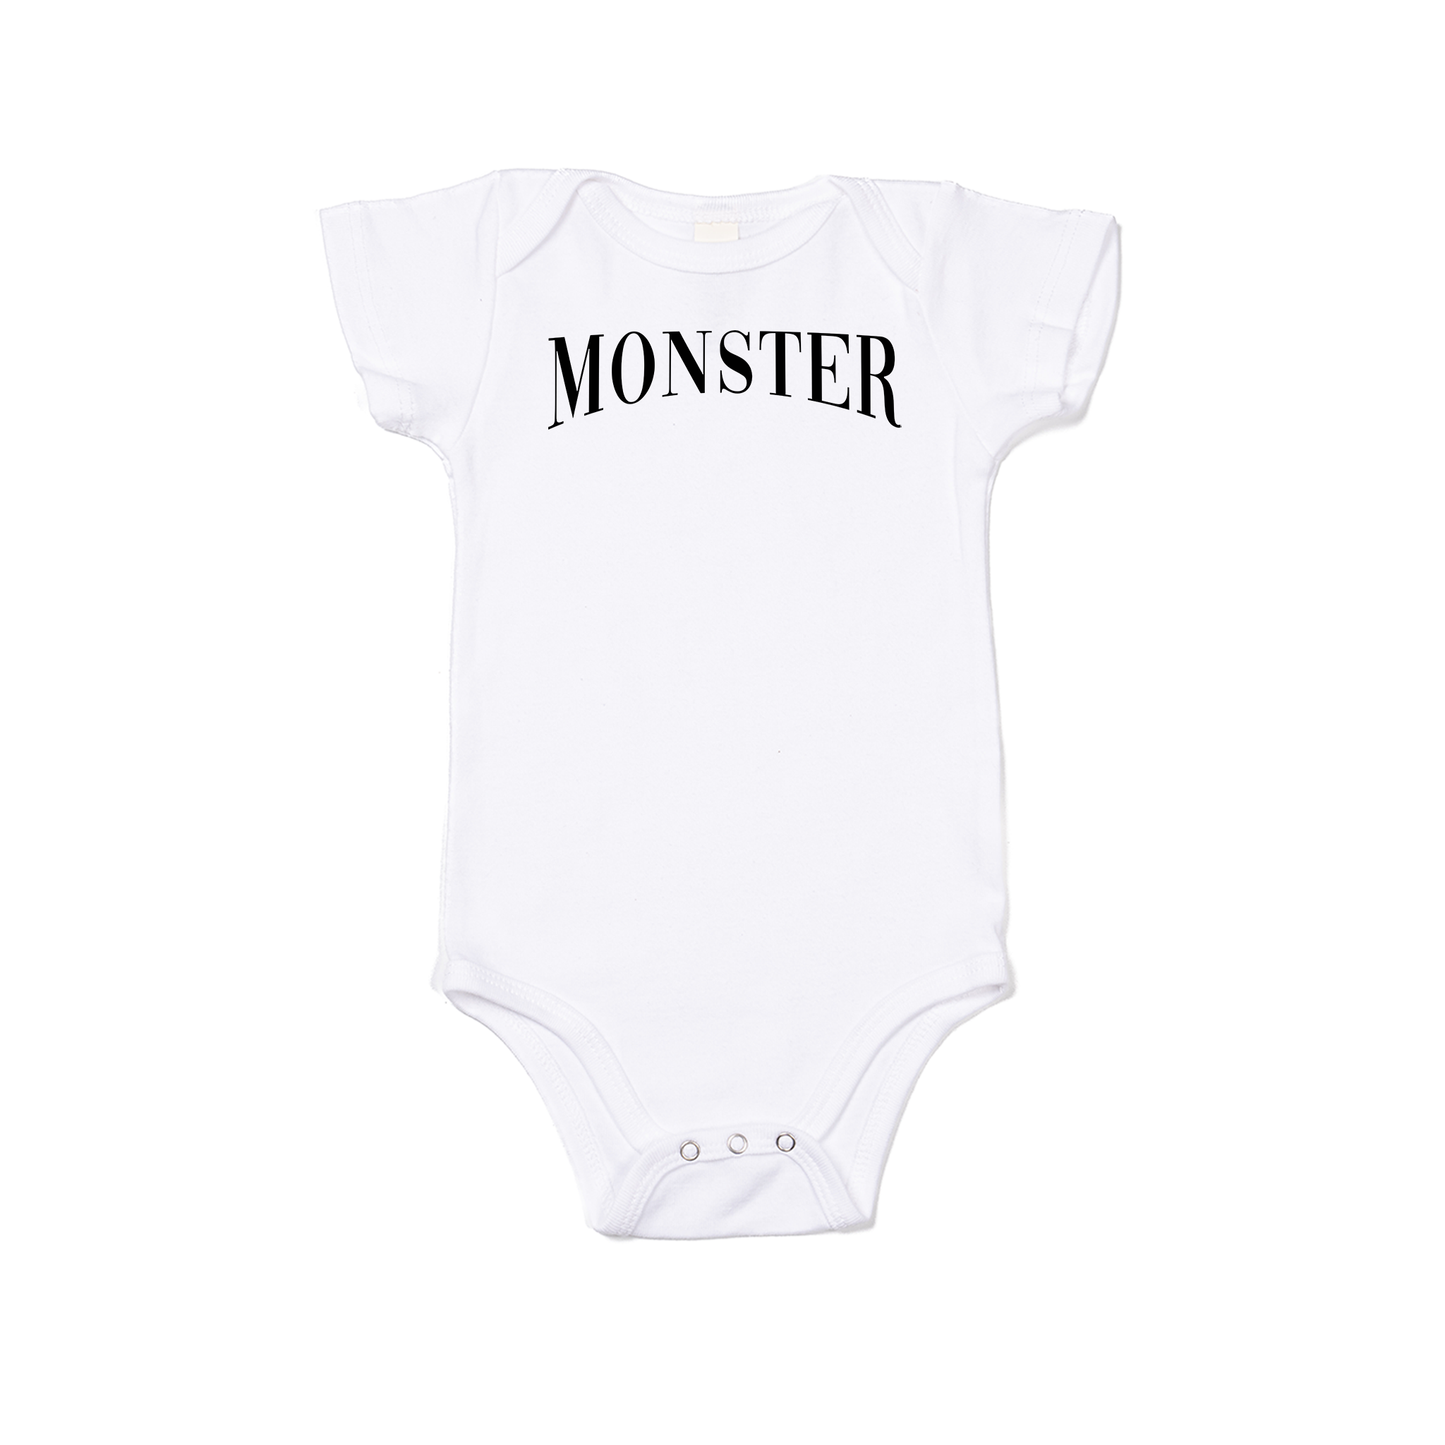 Monster (Black) - Bodysuit (White, Short Sleeve)